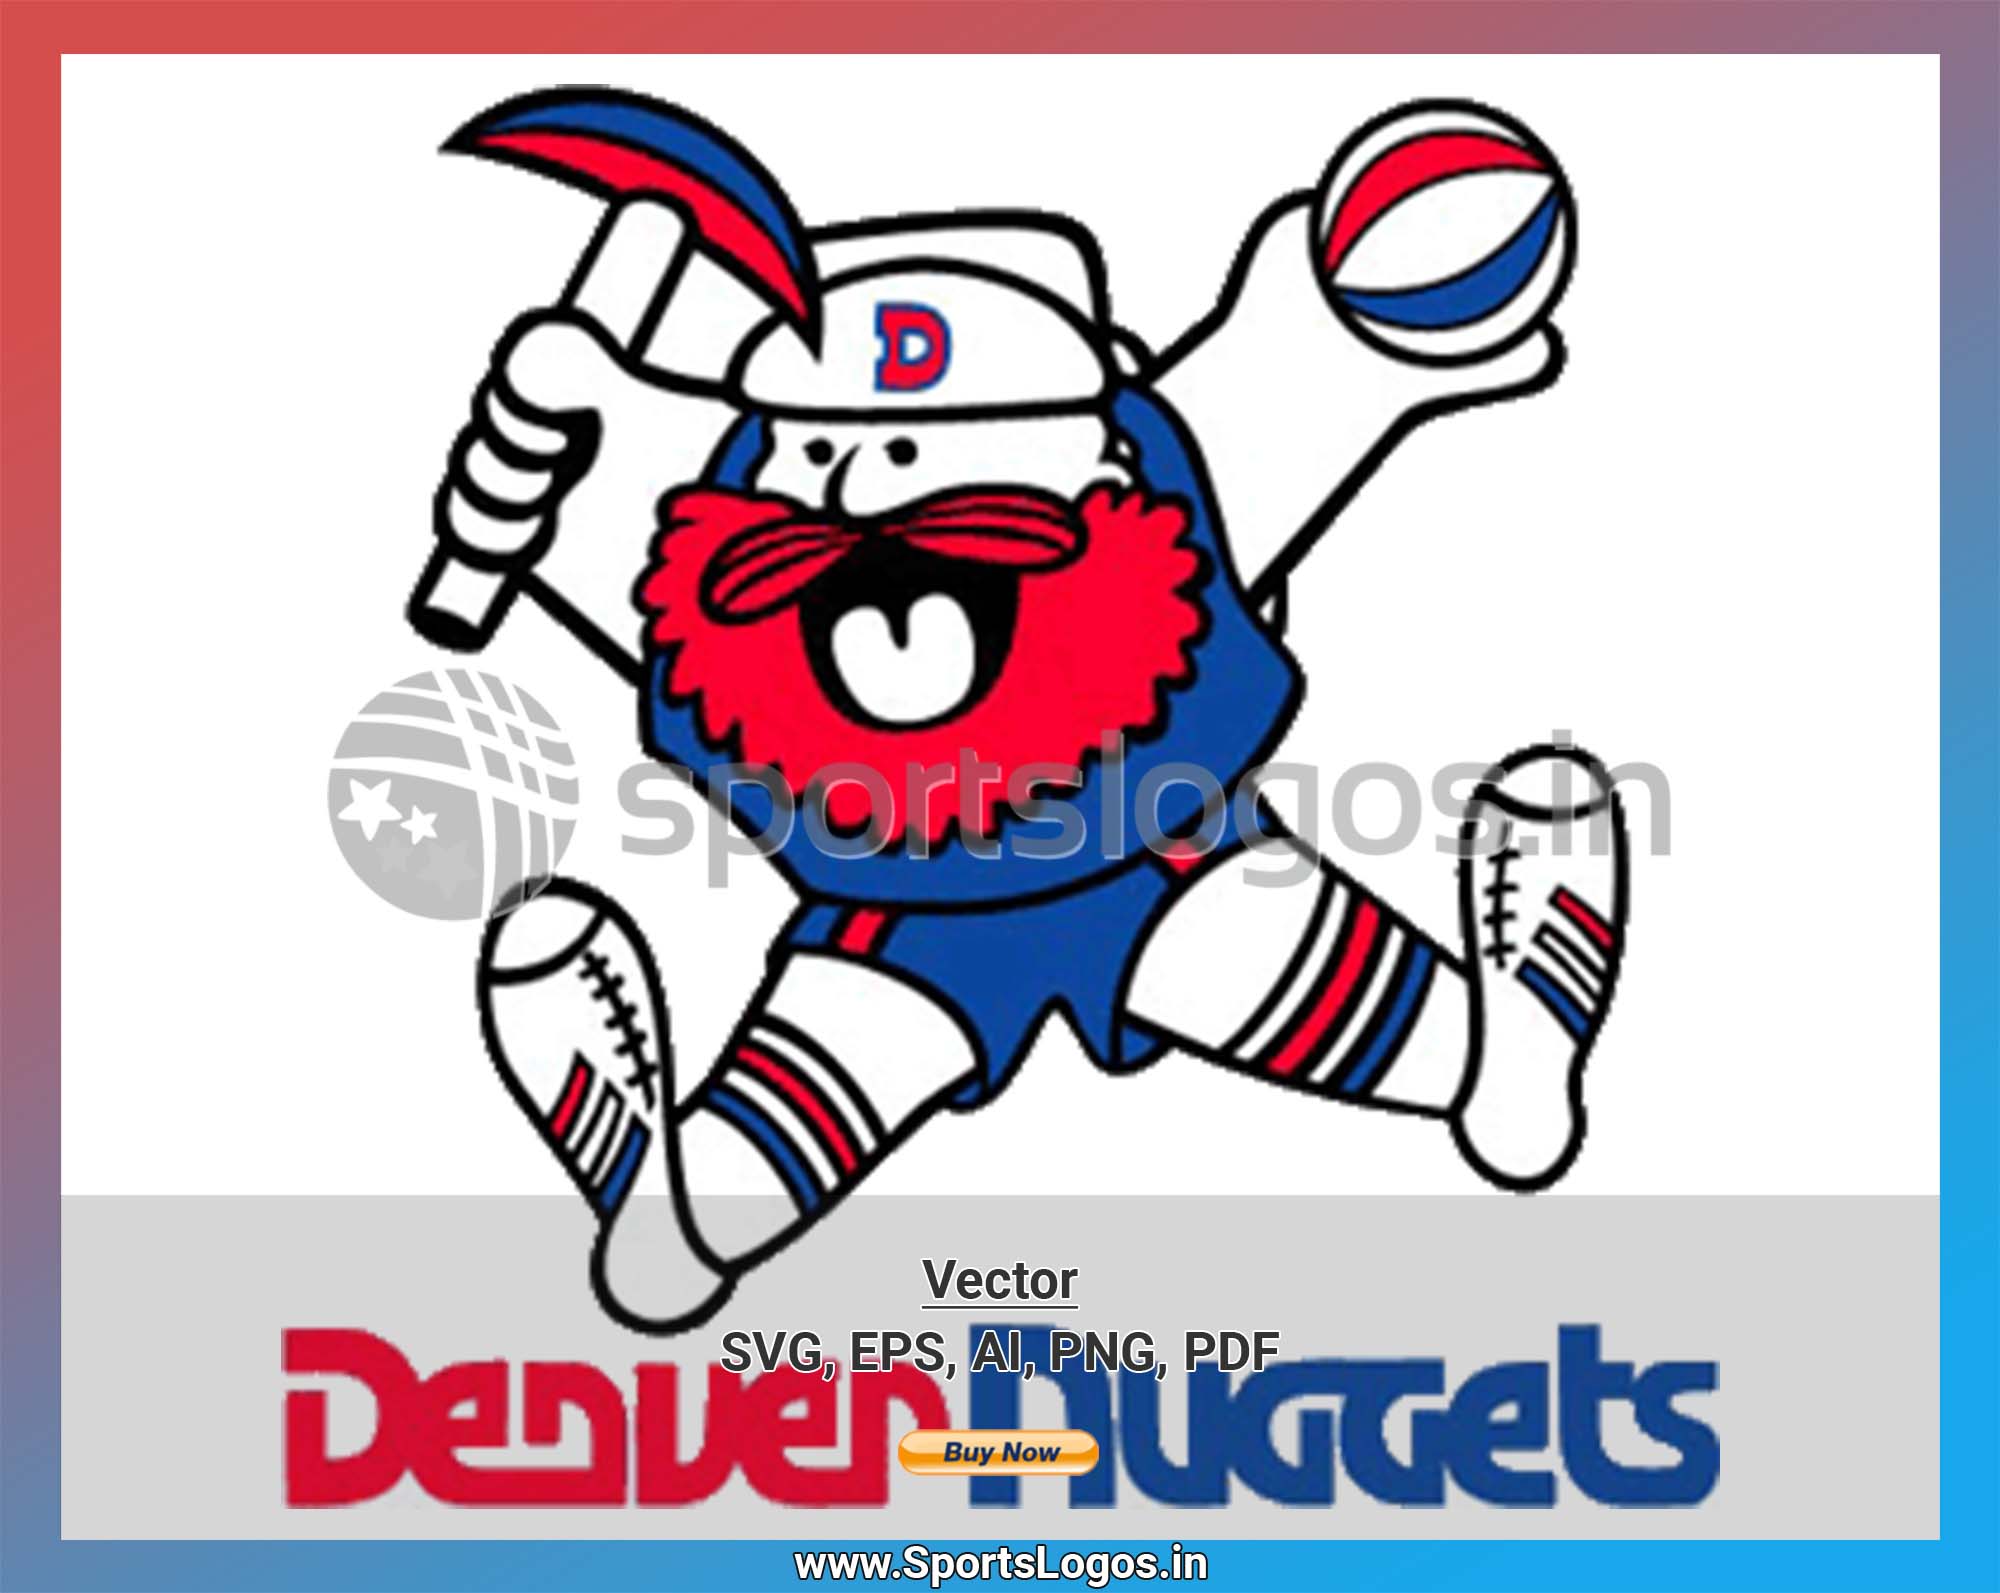 Denver nuggets logo vector 26377420 Vector Art at Vecteezy